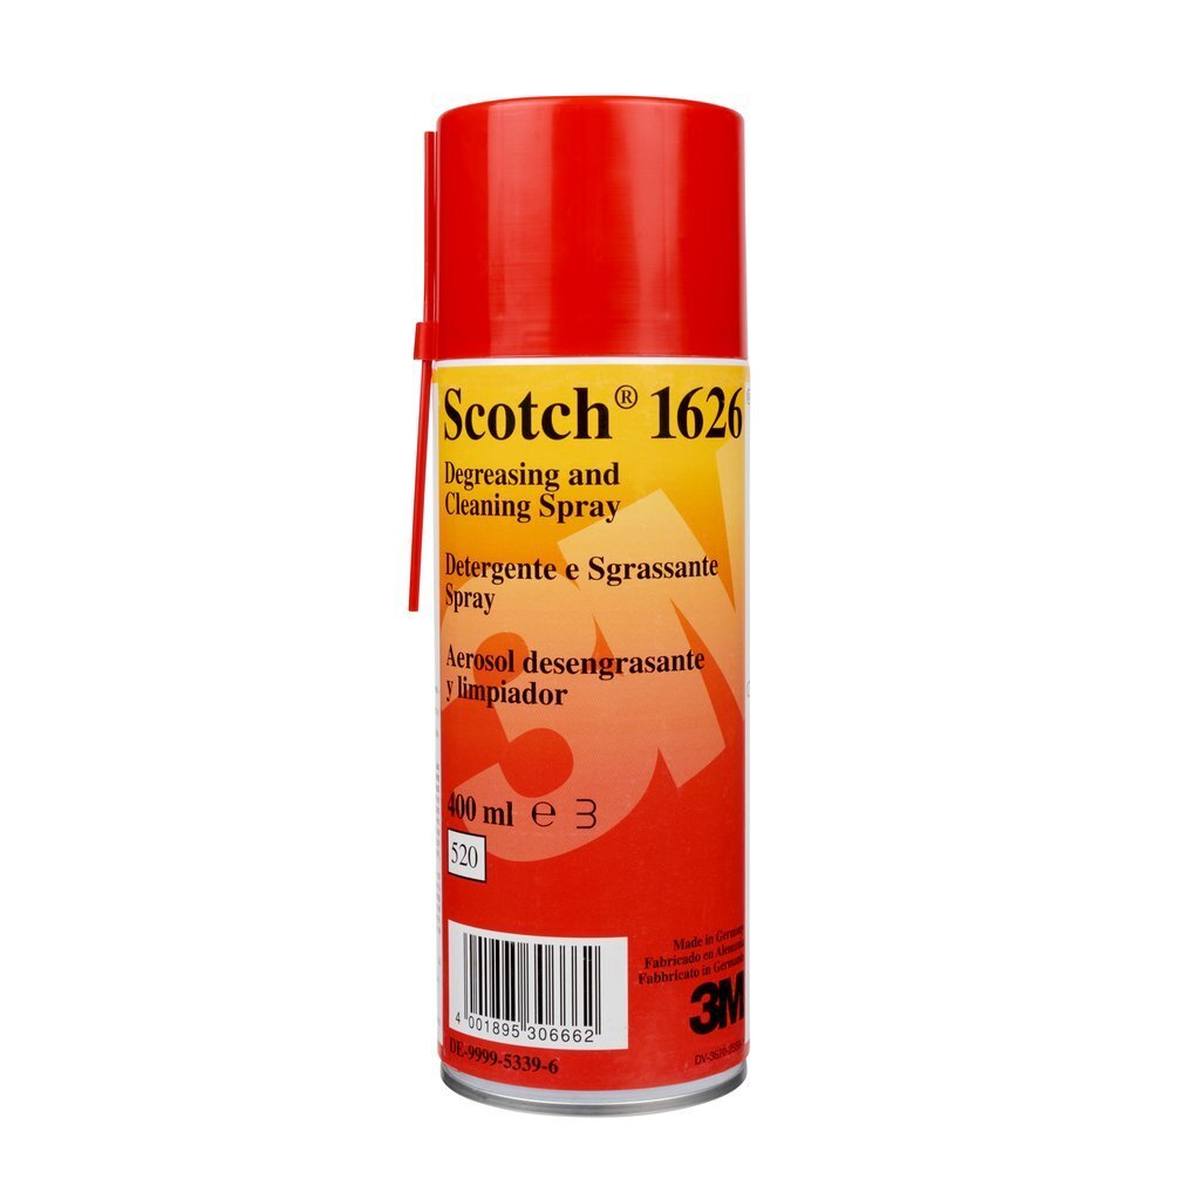 3M Scotch 1626 Reinigungs- und Entfettungsspray, 400 ml